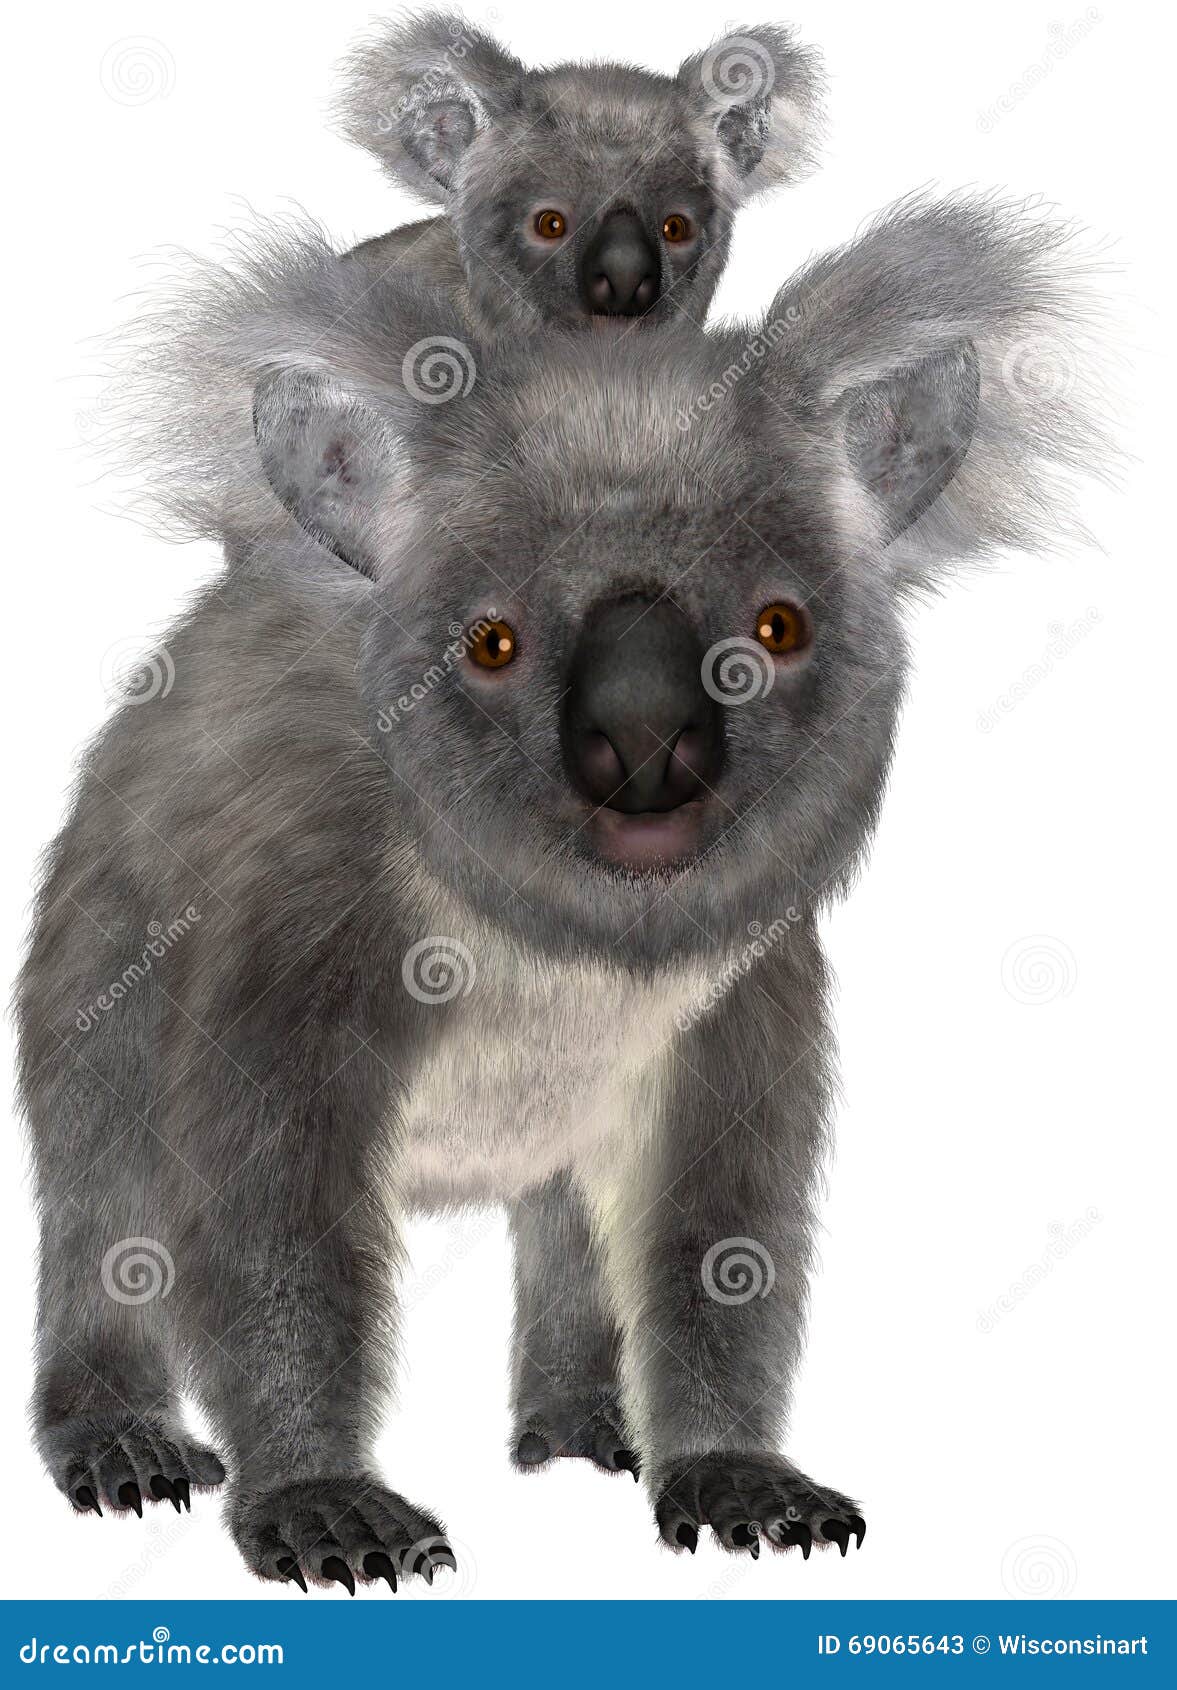 koala bear, baby joey, 